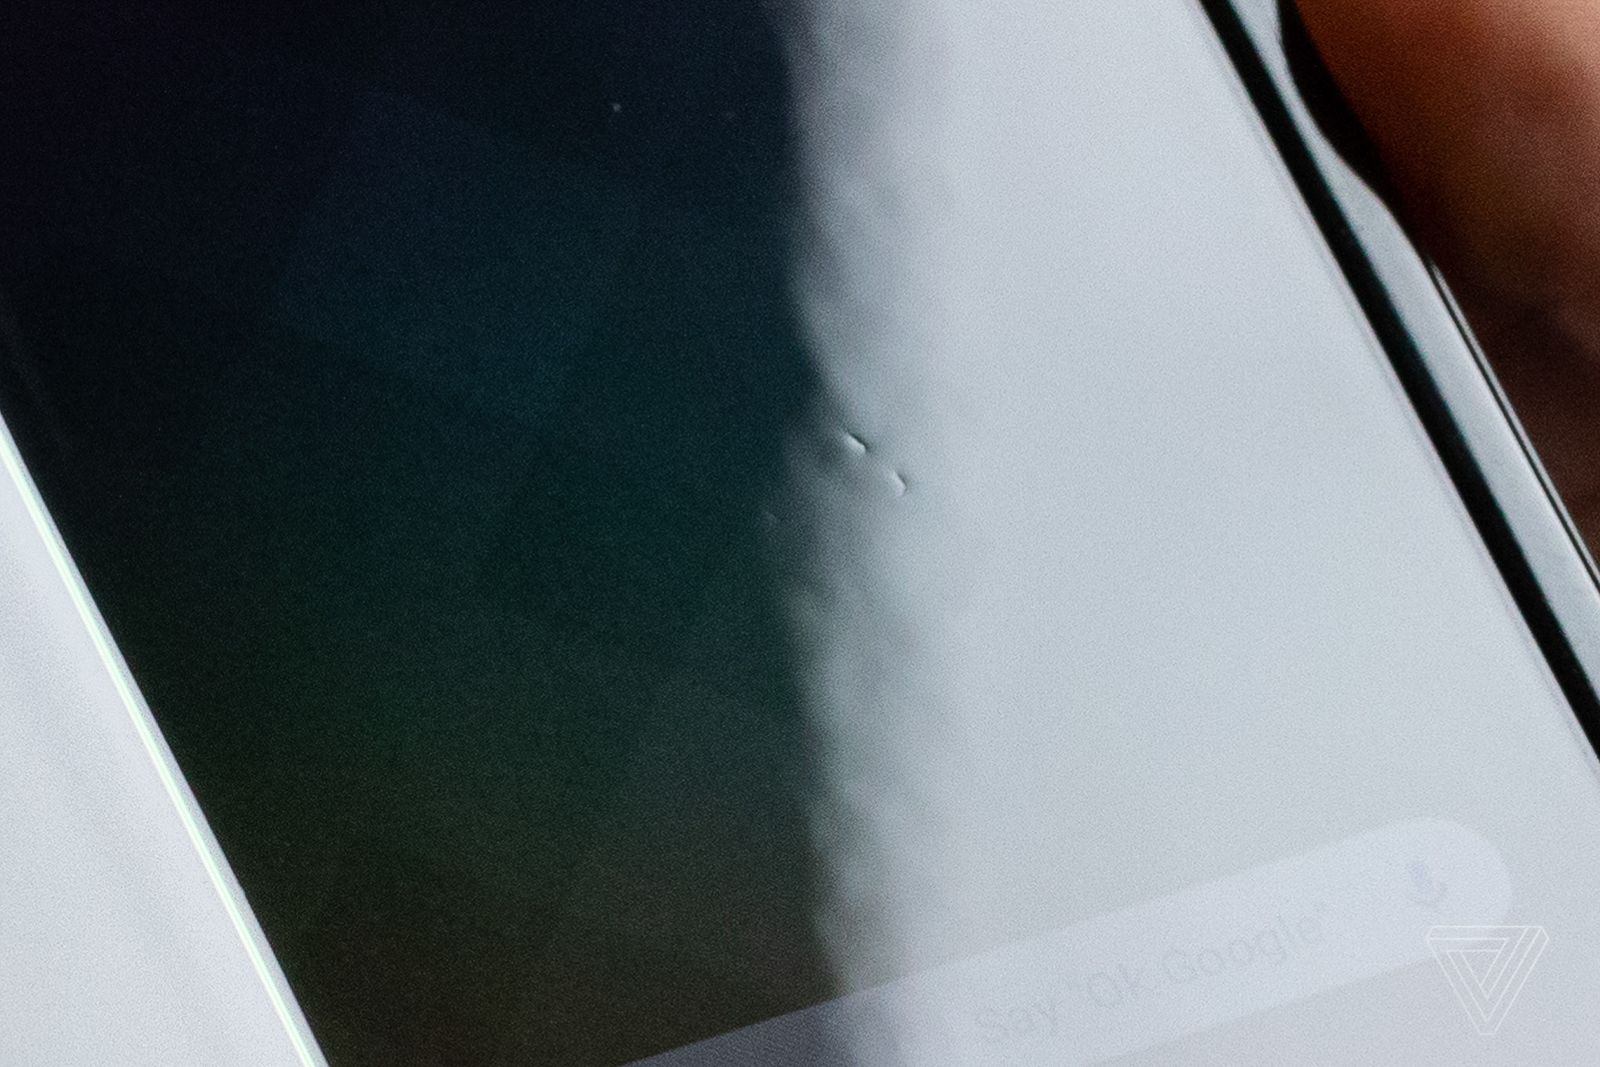 iPhone envy Galaxy Fold display durability